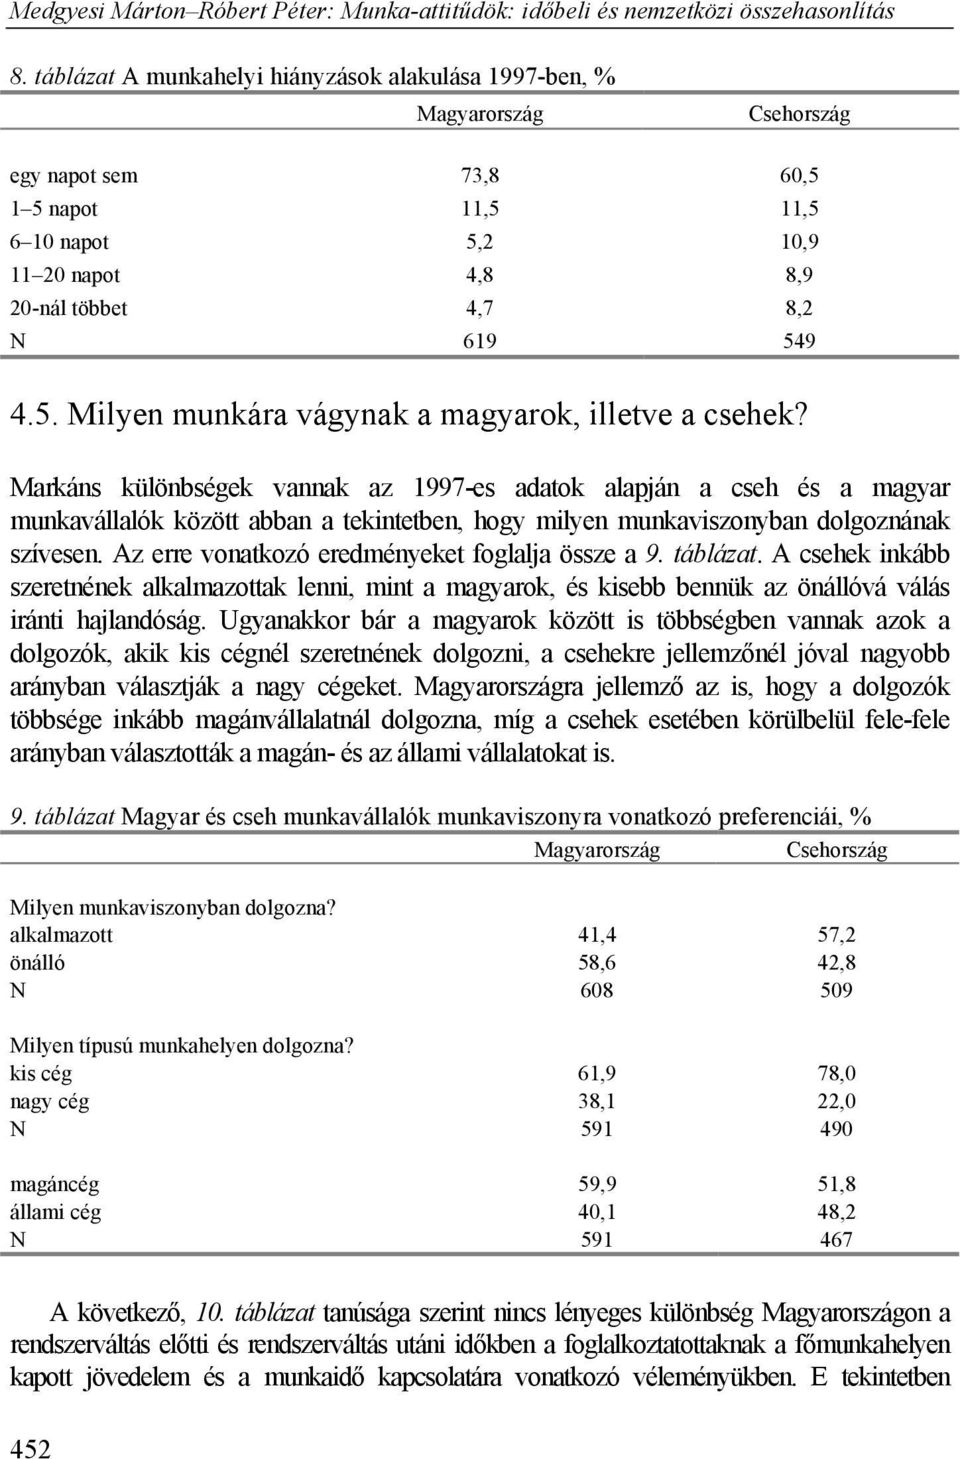 Az erre vonatkozó eredményeket foglalja össze a 9. táblázat. A csehek inkább szeretnének alkalmazottak lenni, mint a magyarok, és kisebb bennük az önállóvá válás iránti hajlandóság.